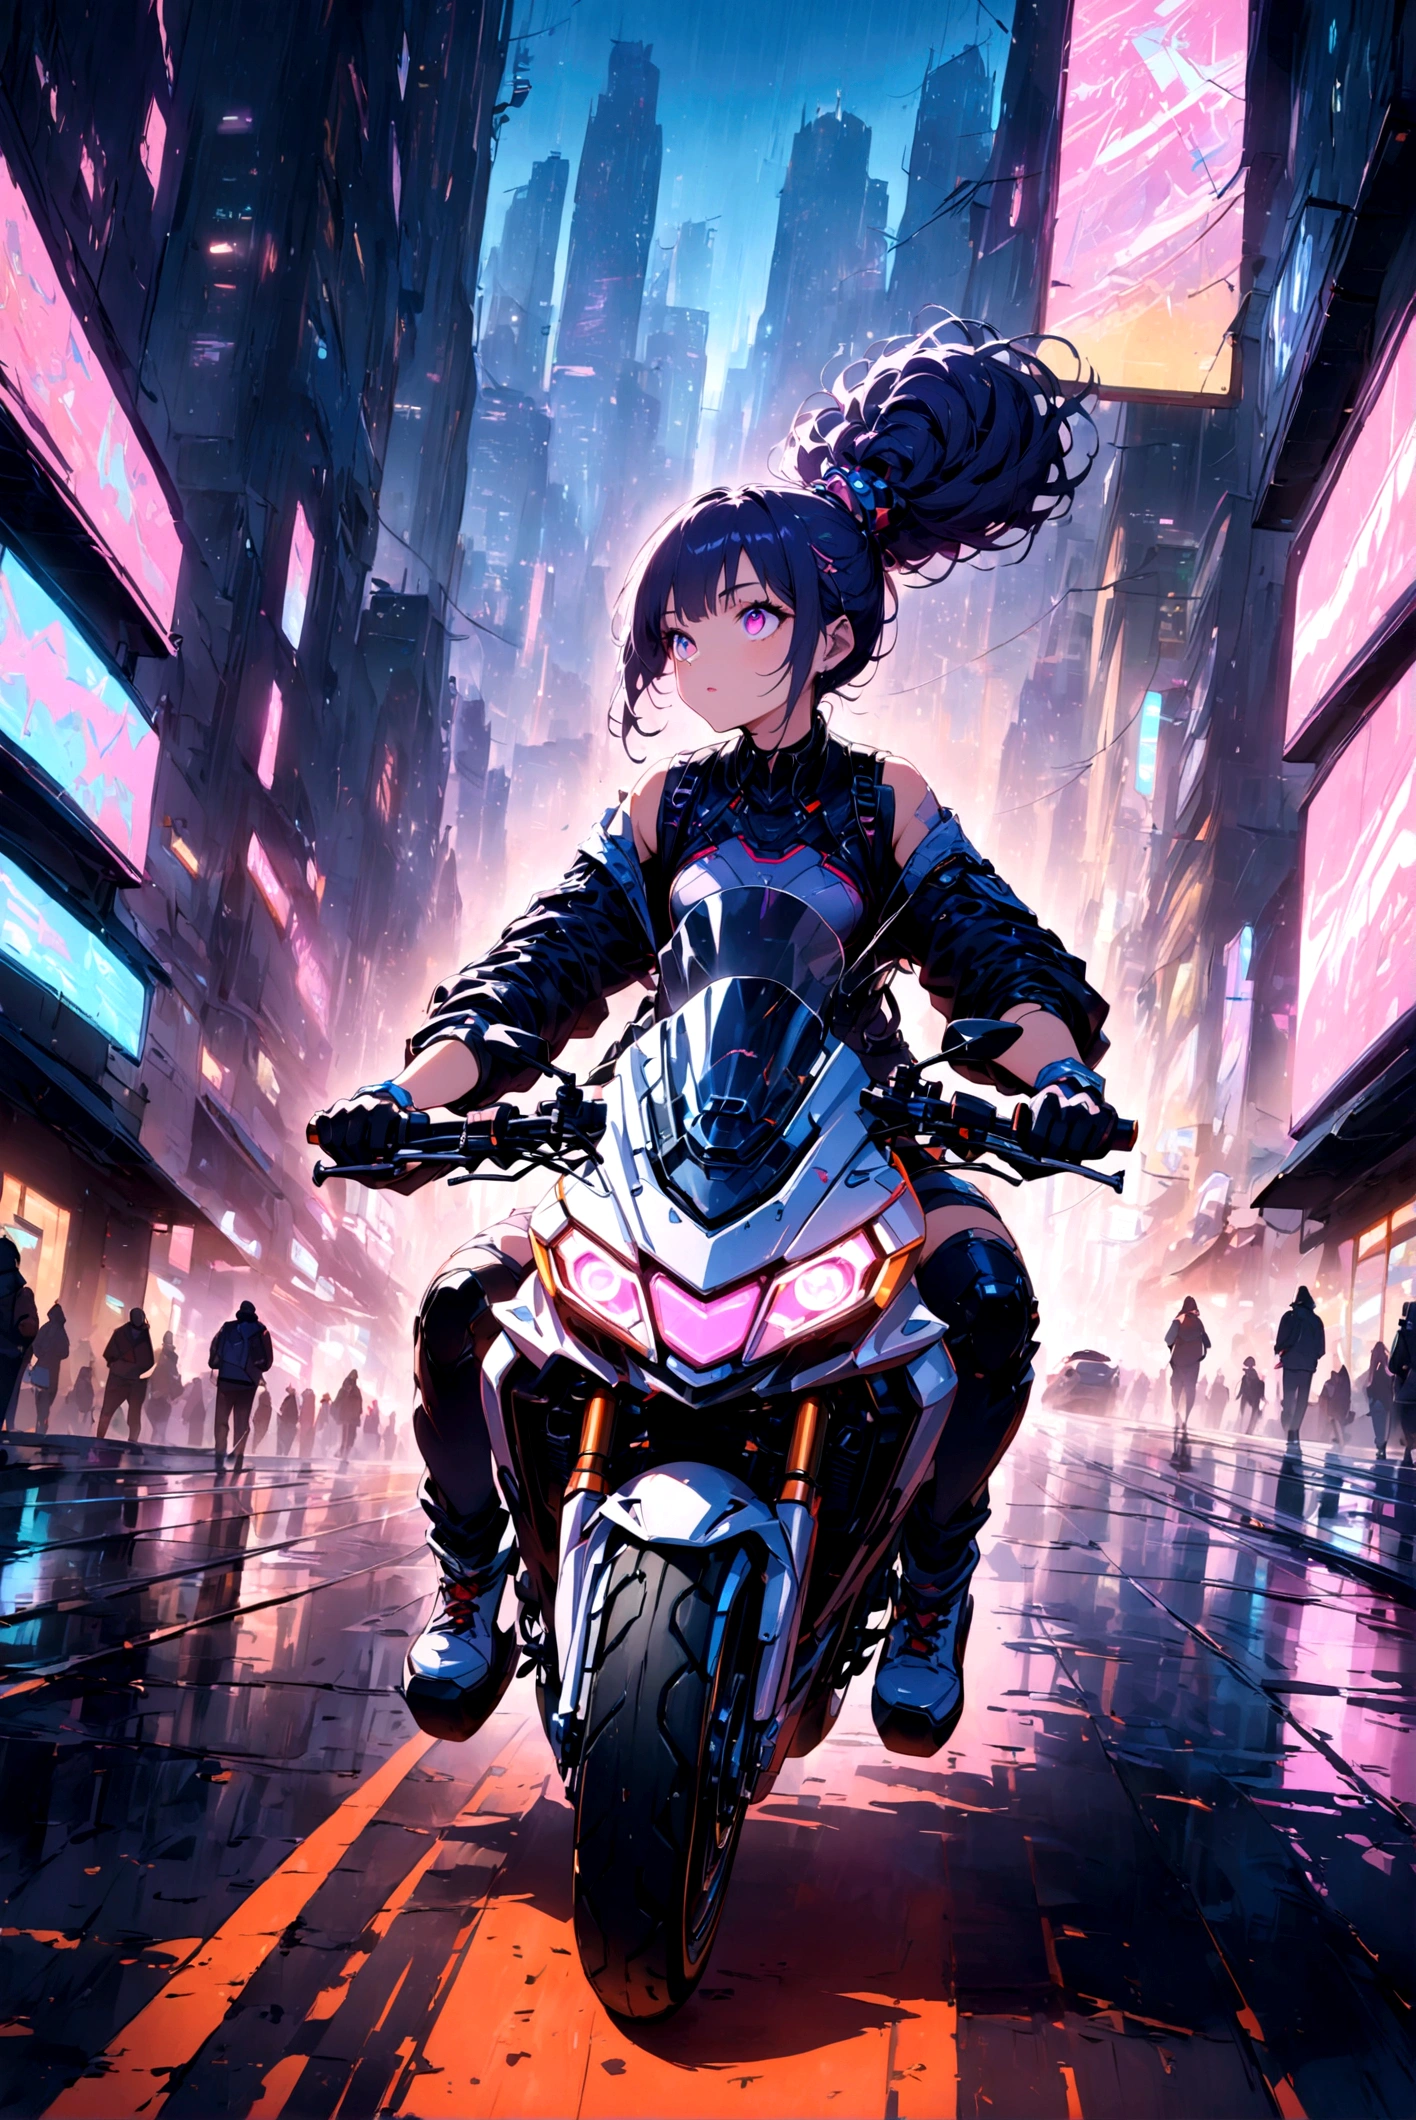 (((يبحث)))，1 فتاة，(((قيادة دراجة نارية كبيرة عبر المدينة)))，ضحك بصوت مرتفع， - منظر المدينة المستقبلي，وقت متأخر من الليل，cyberpunk，نيون， - cyberpunk aesthetic - نيون lights - Nighttime setting - Detailed and vibrant توضيح - High-tech environment - Woman in futuristic outfit - Motorcycle - Dynamic pose - Urban street 最佳画质，الحد الأقصى للقرار，تحفة，تفاصيل مجنونة， أفضل جودة, تحفة, توضيح, مفصلة للغاية, عيون مفصلة جميلة, ,